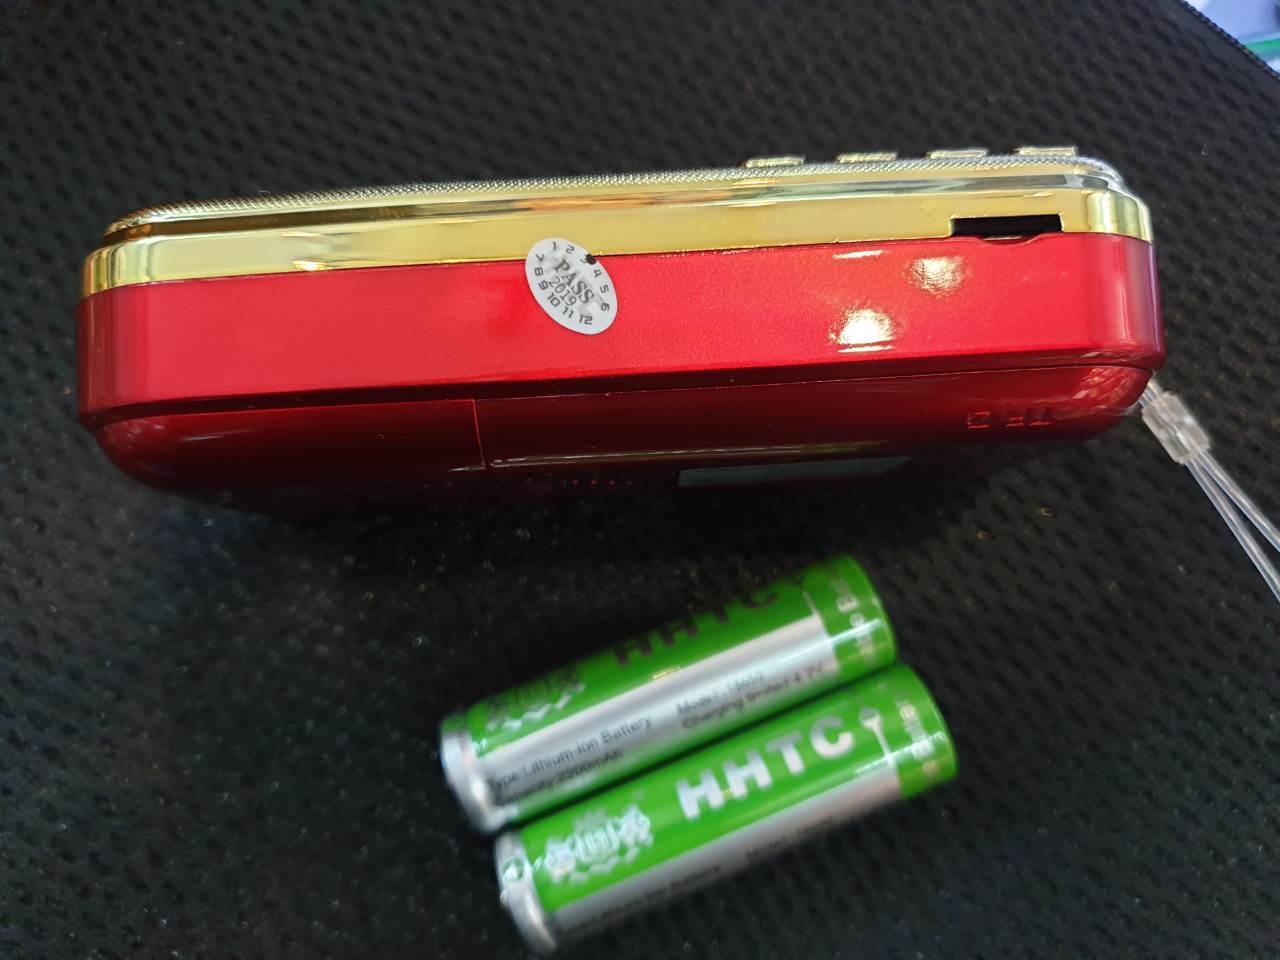 Loa Nghe nhạc USB, thẻ nhớ Craven 836 2pin (màu ngẫu nhiên) - hàng nhập khẩu